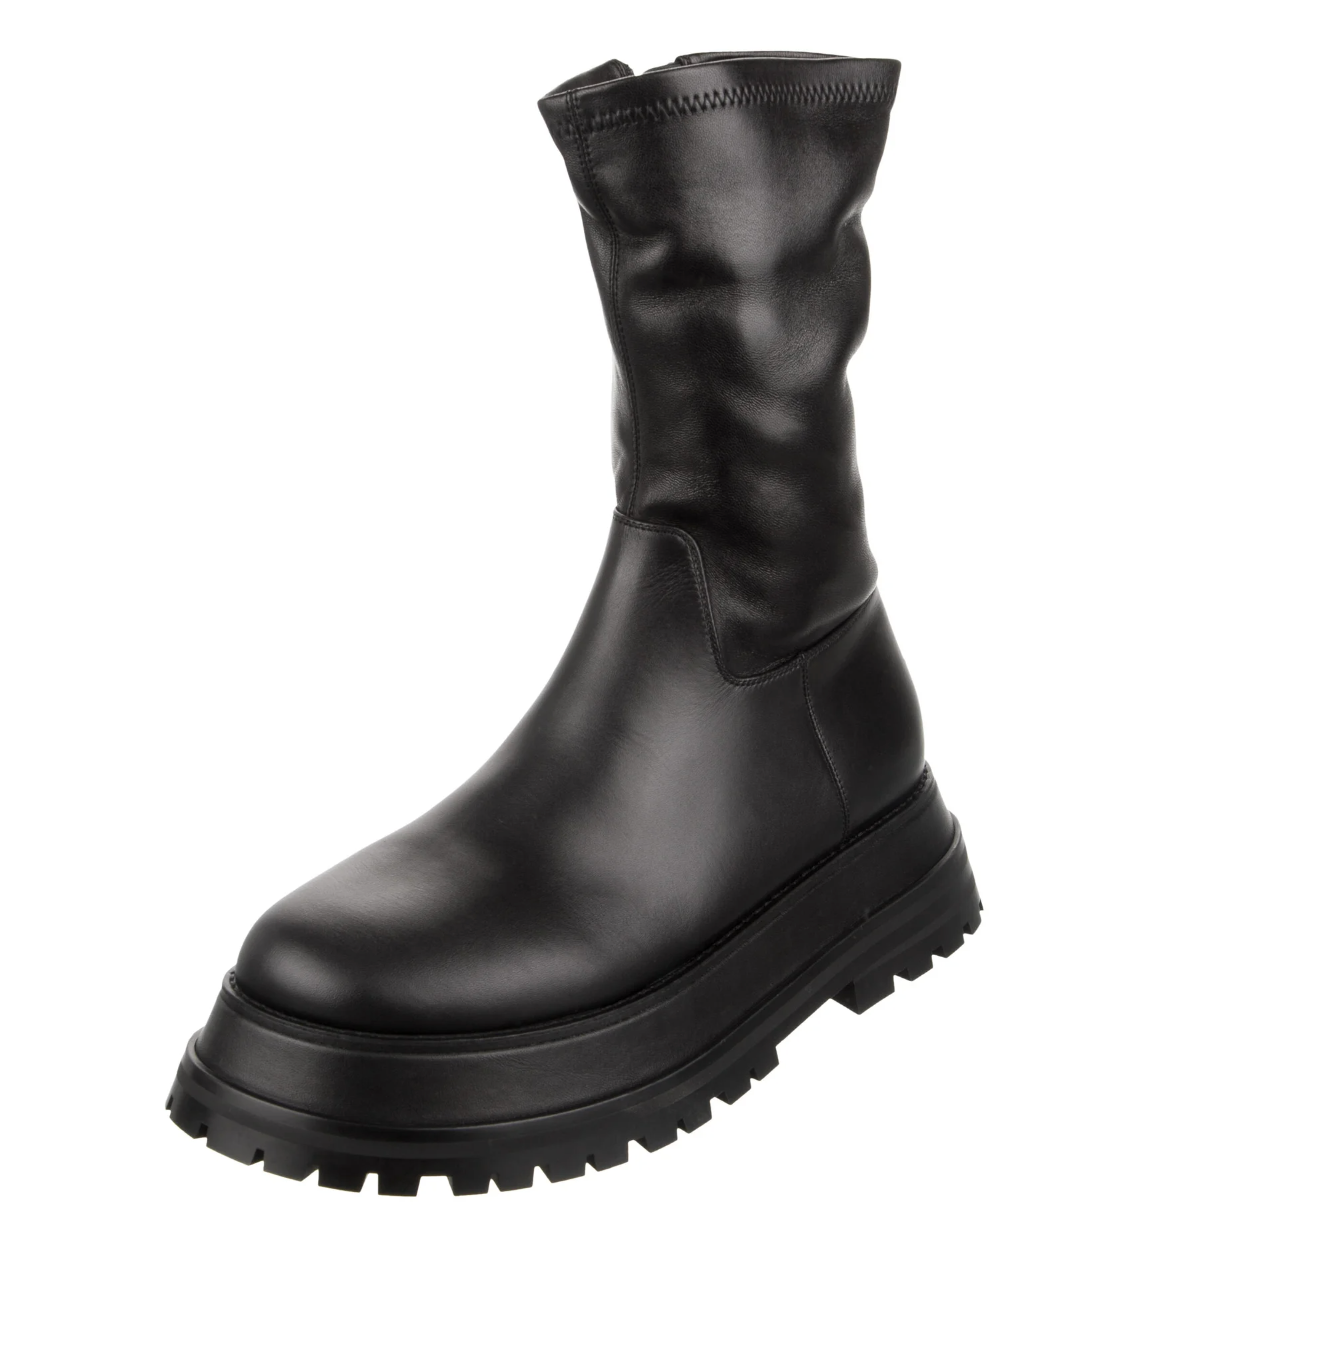 Black Combat Boots - 8.5